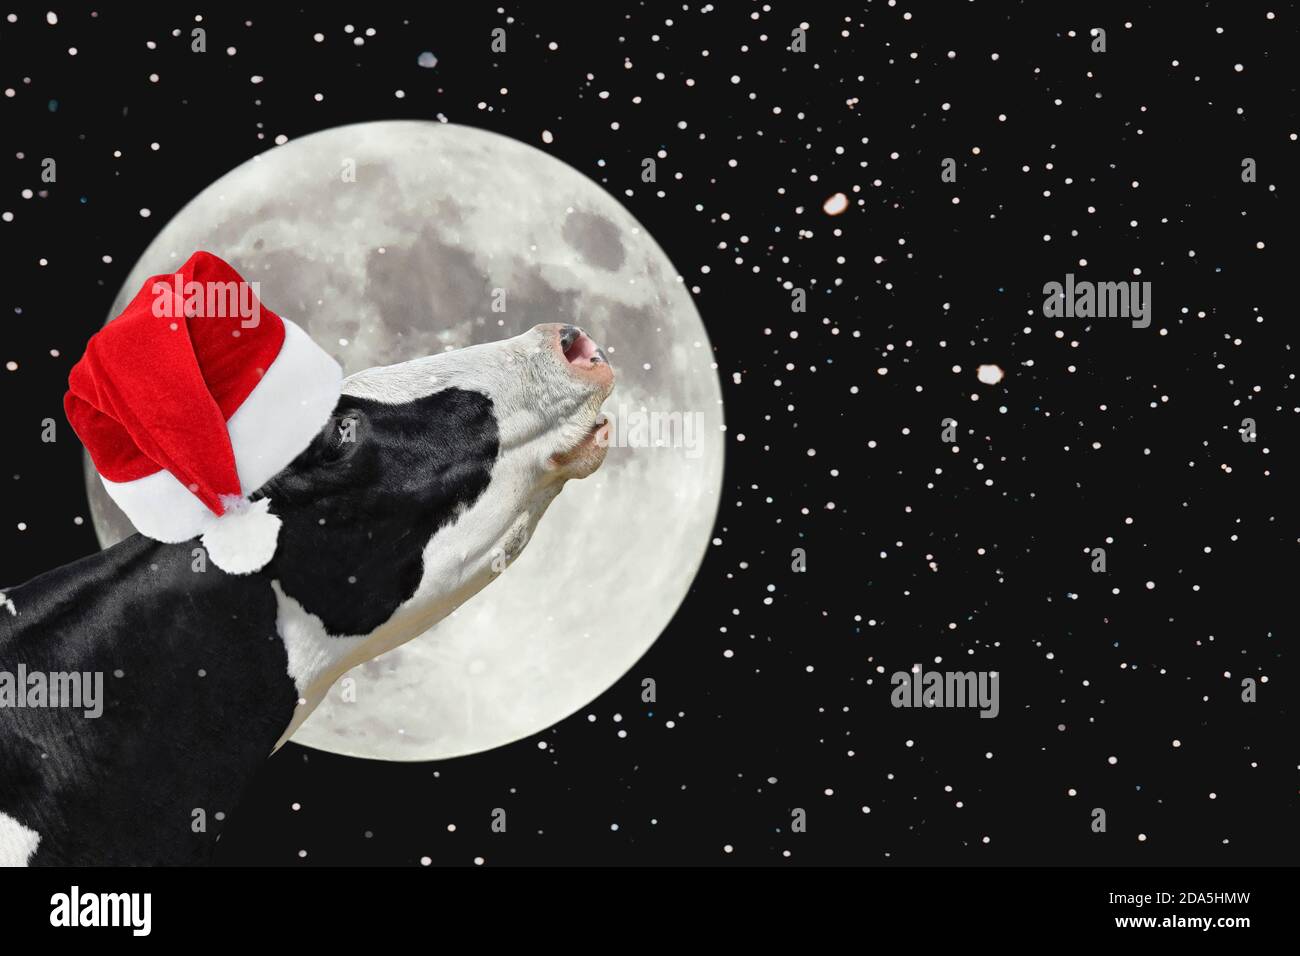 Lustige Kuh in Weihnachten Weihnachtsmütze auf dem Hintergrund der großen hellen Mond. Eine schwarz-weiße Kuh stöhnt am Mond. Nutztiere. Stockfoto